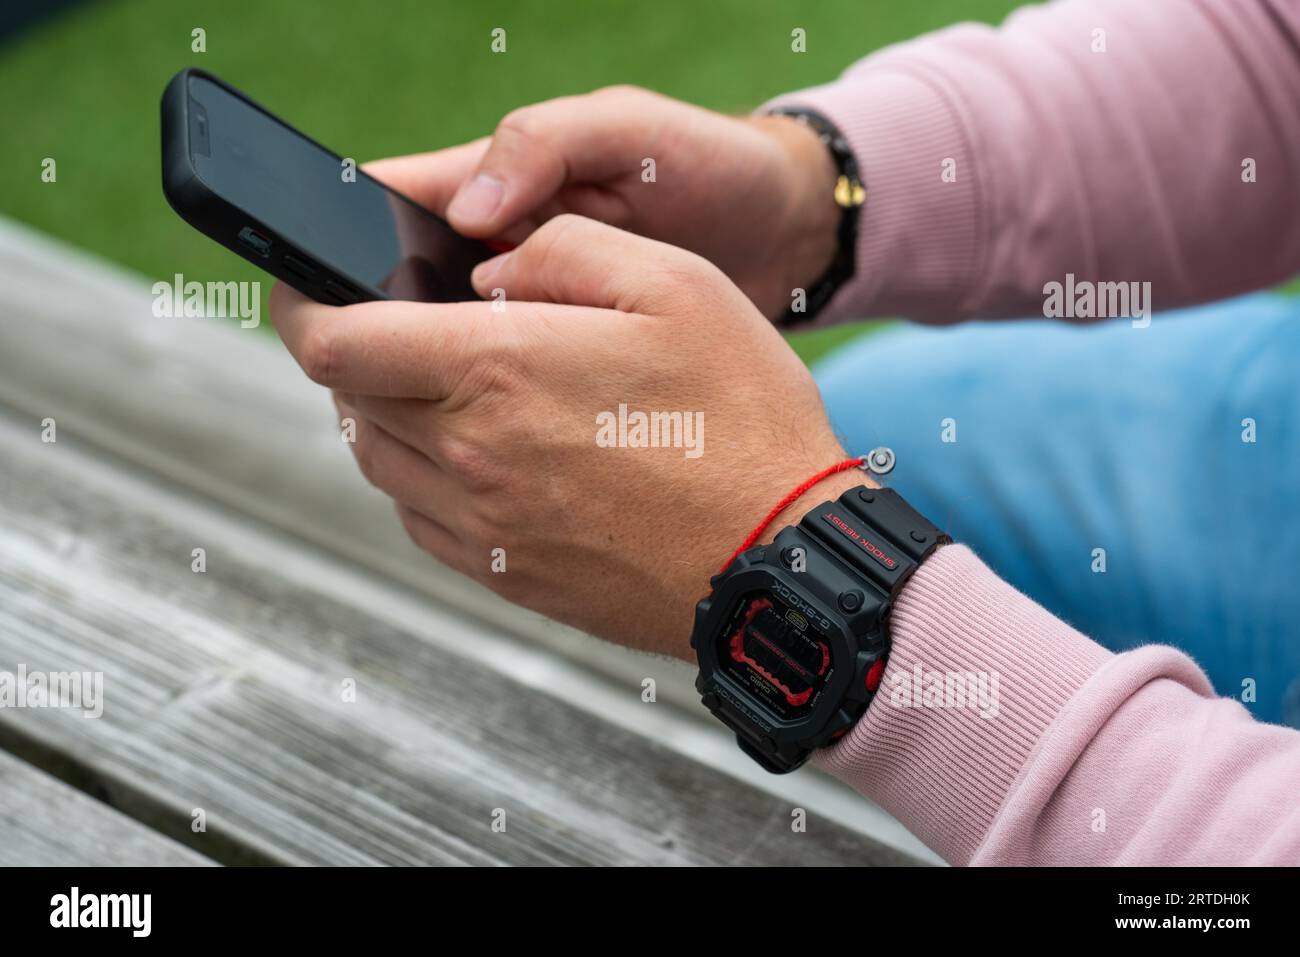 Casio g-shock DW-5600 wrist watch Stock Photo - Alamy